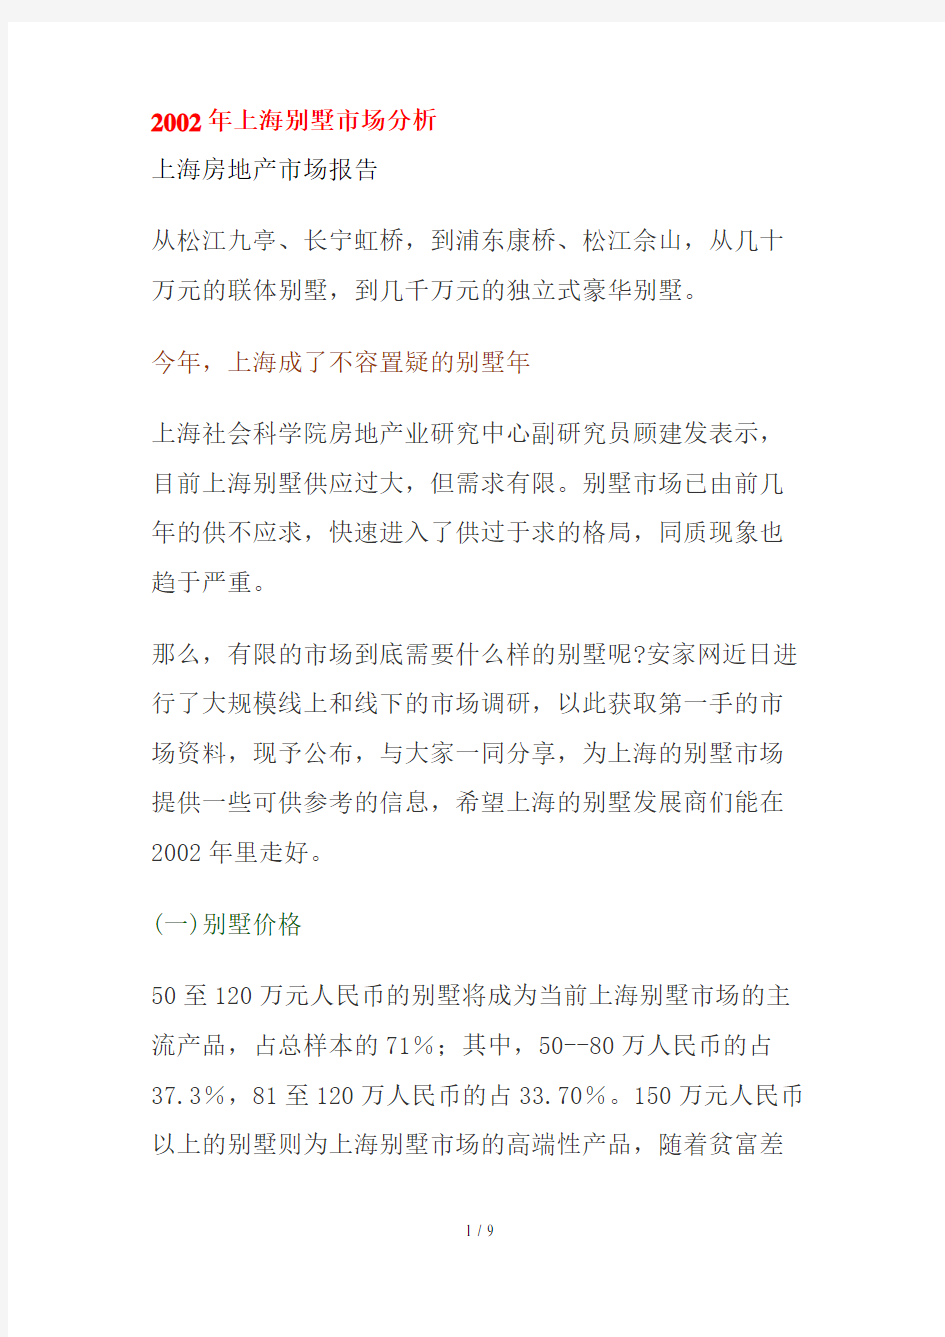 上海别墅市场分析方案概述(doc 8页)